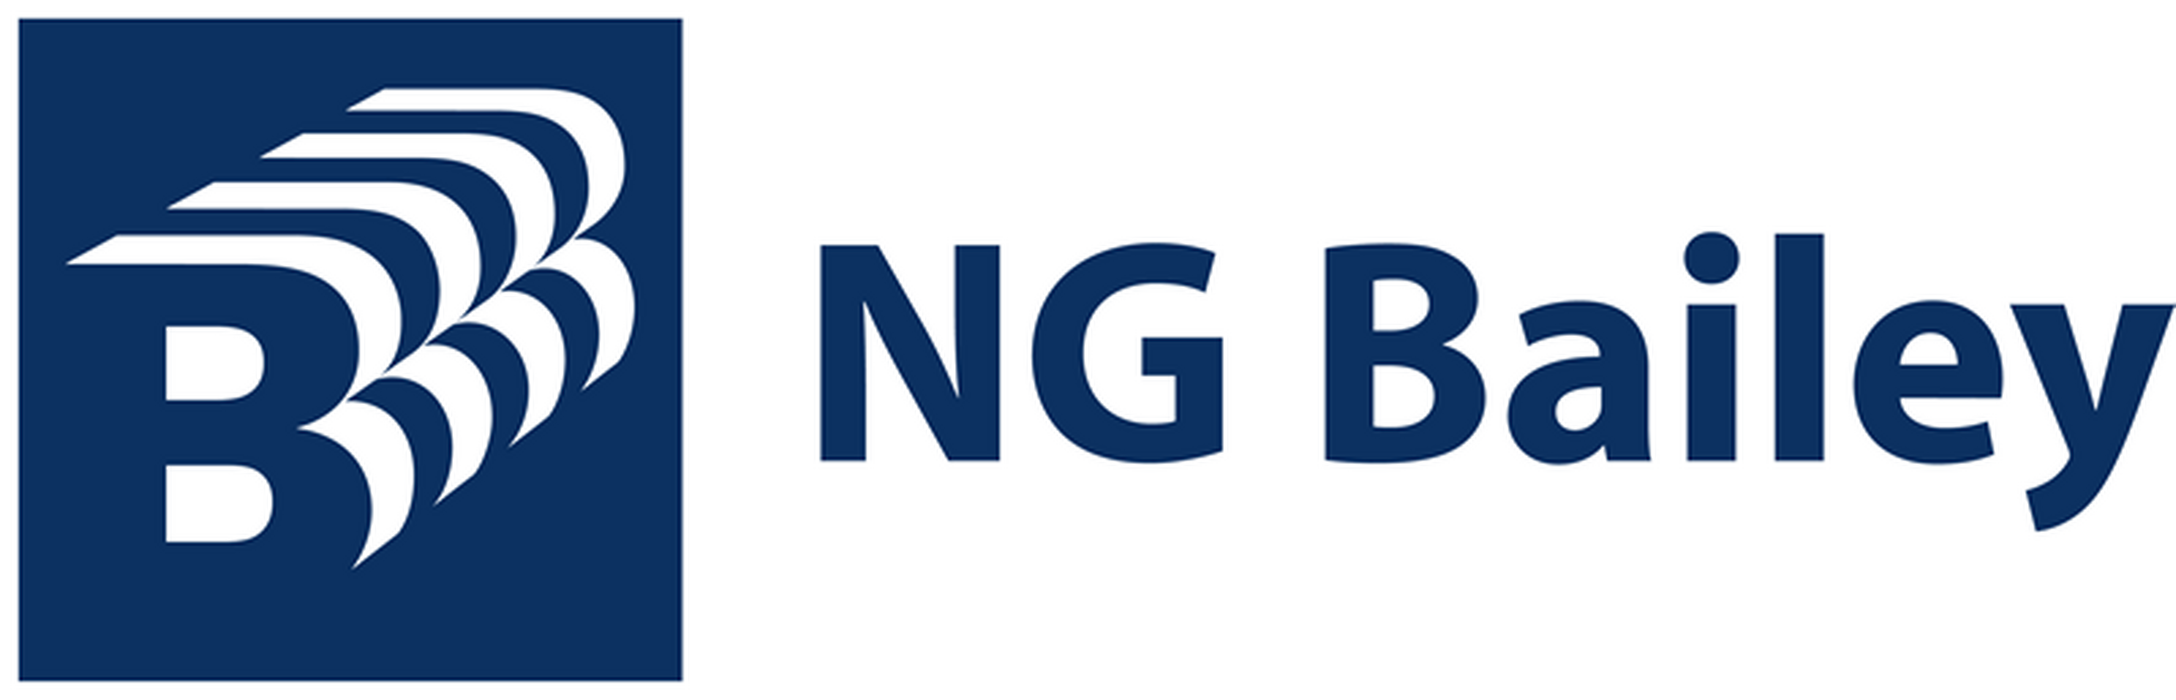 ng-bailey-logo